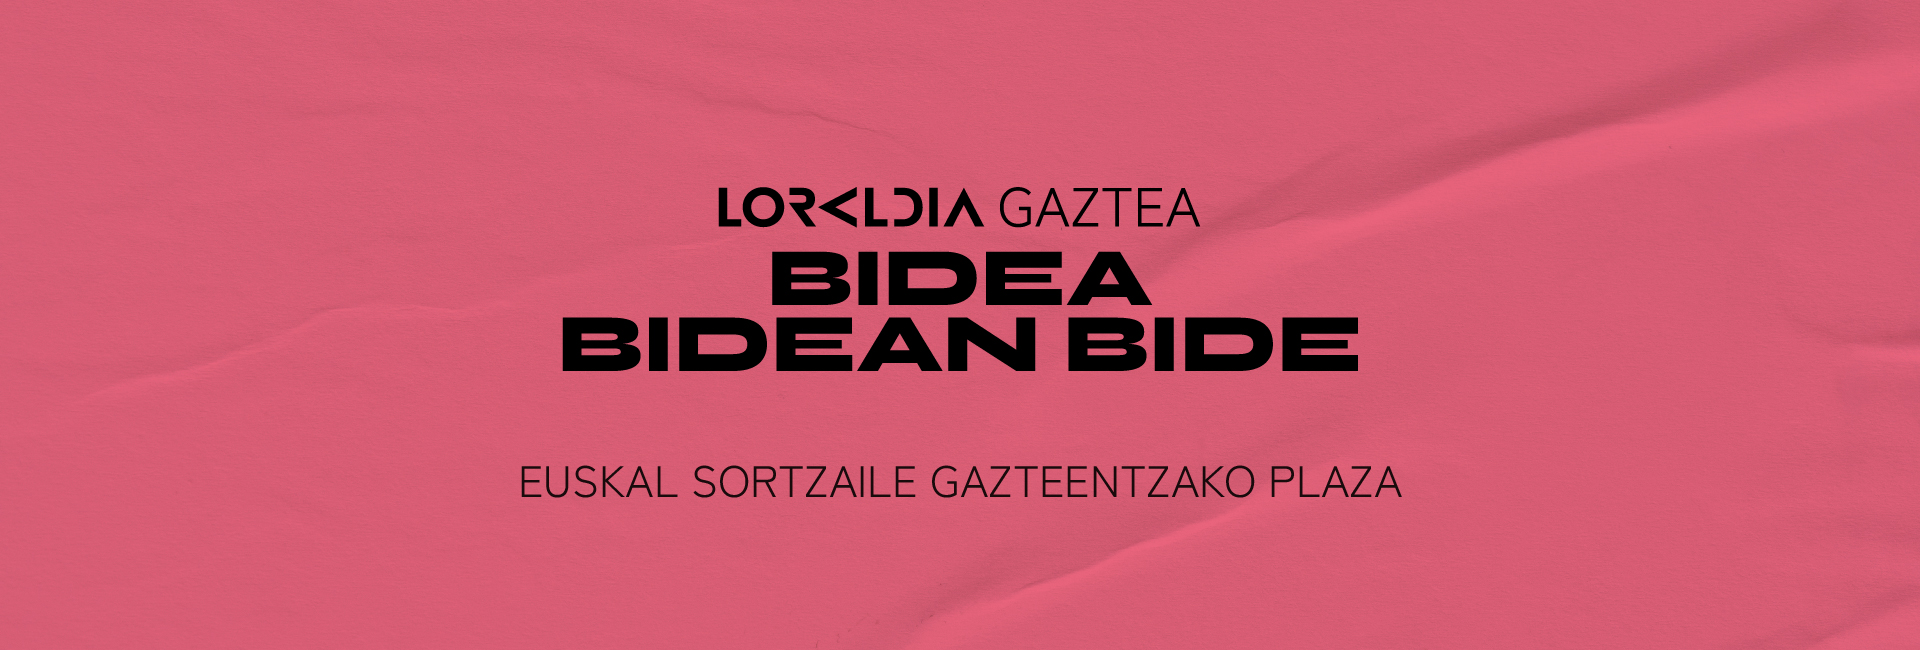 Loraldia-Bidea Bidean Bide